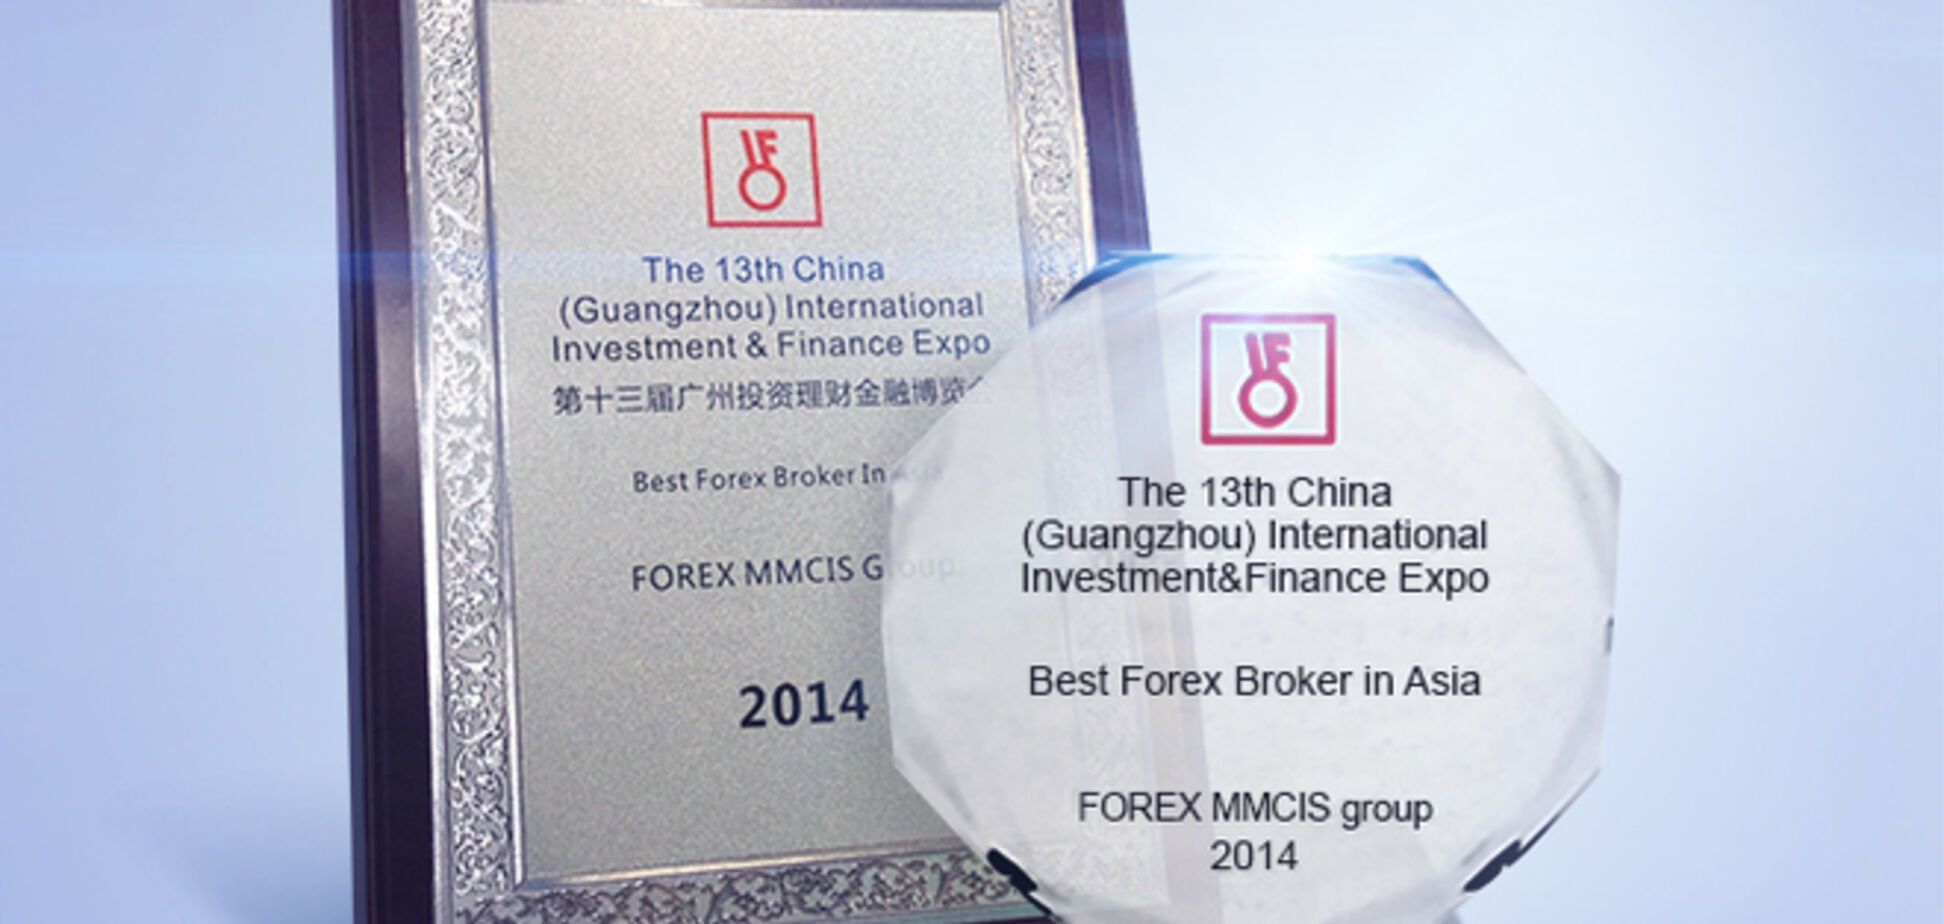 FOREX MMCIS group назвали лучшим брокером в Азии